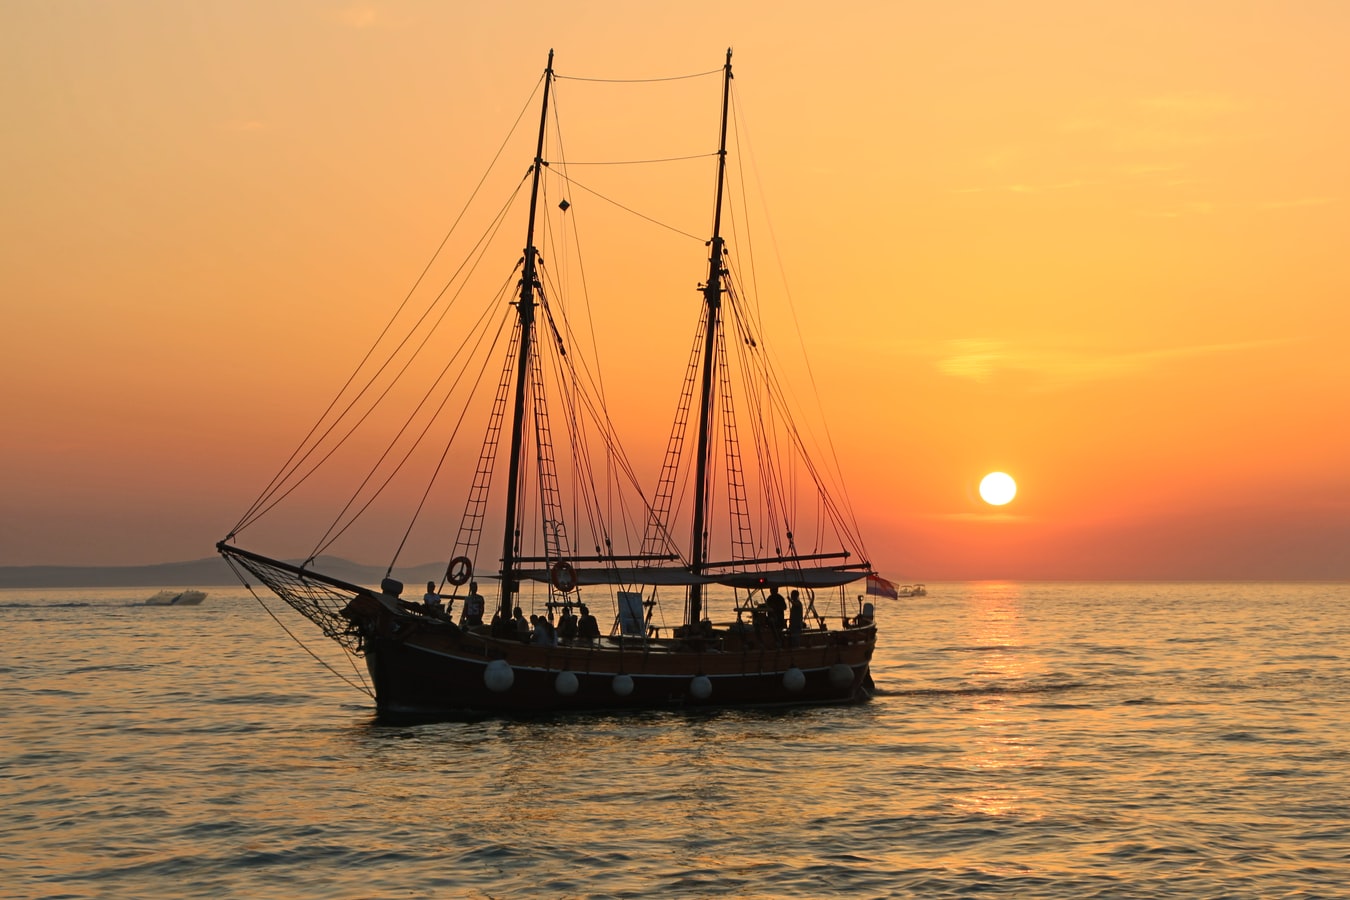 Πειρατεία Νιγηρία – Έλληνες: Συνεχίζεται το θρίλερ, οι πειρατές ζητούν λύτρα